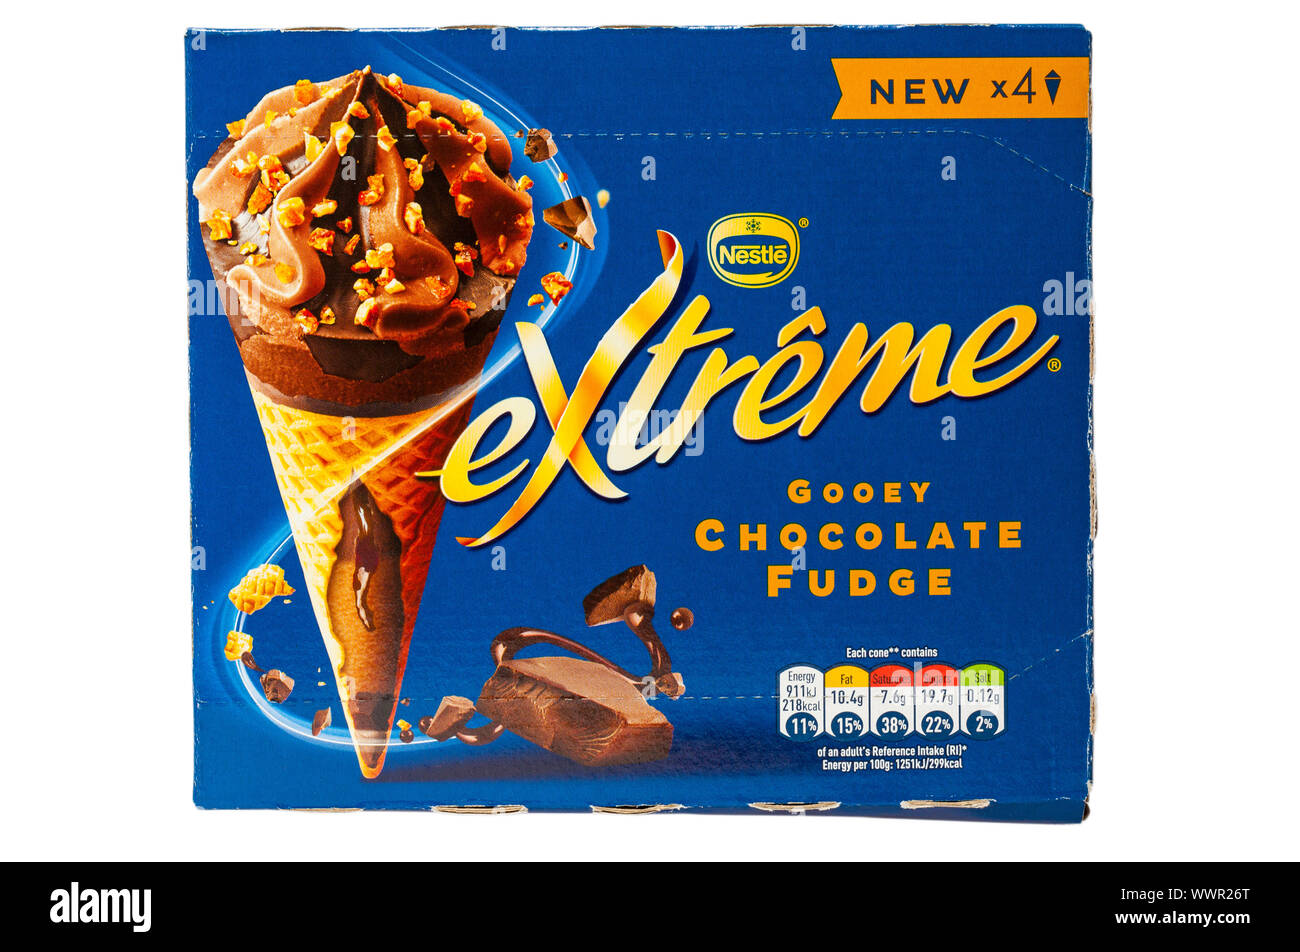 Box von Nestle extreme Gooey chocolate fudge Eis auf weißem Hintergrund - Eis, Eis, Eis Stockfoto